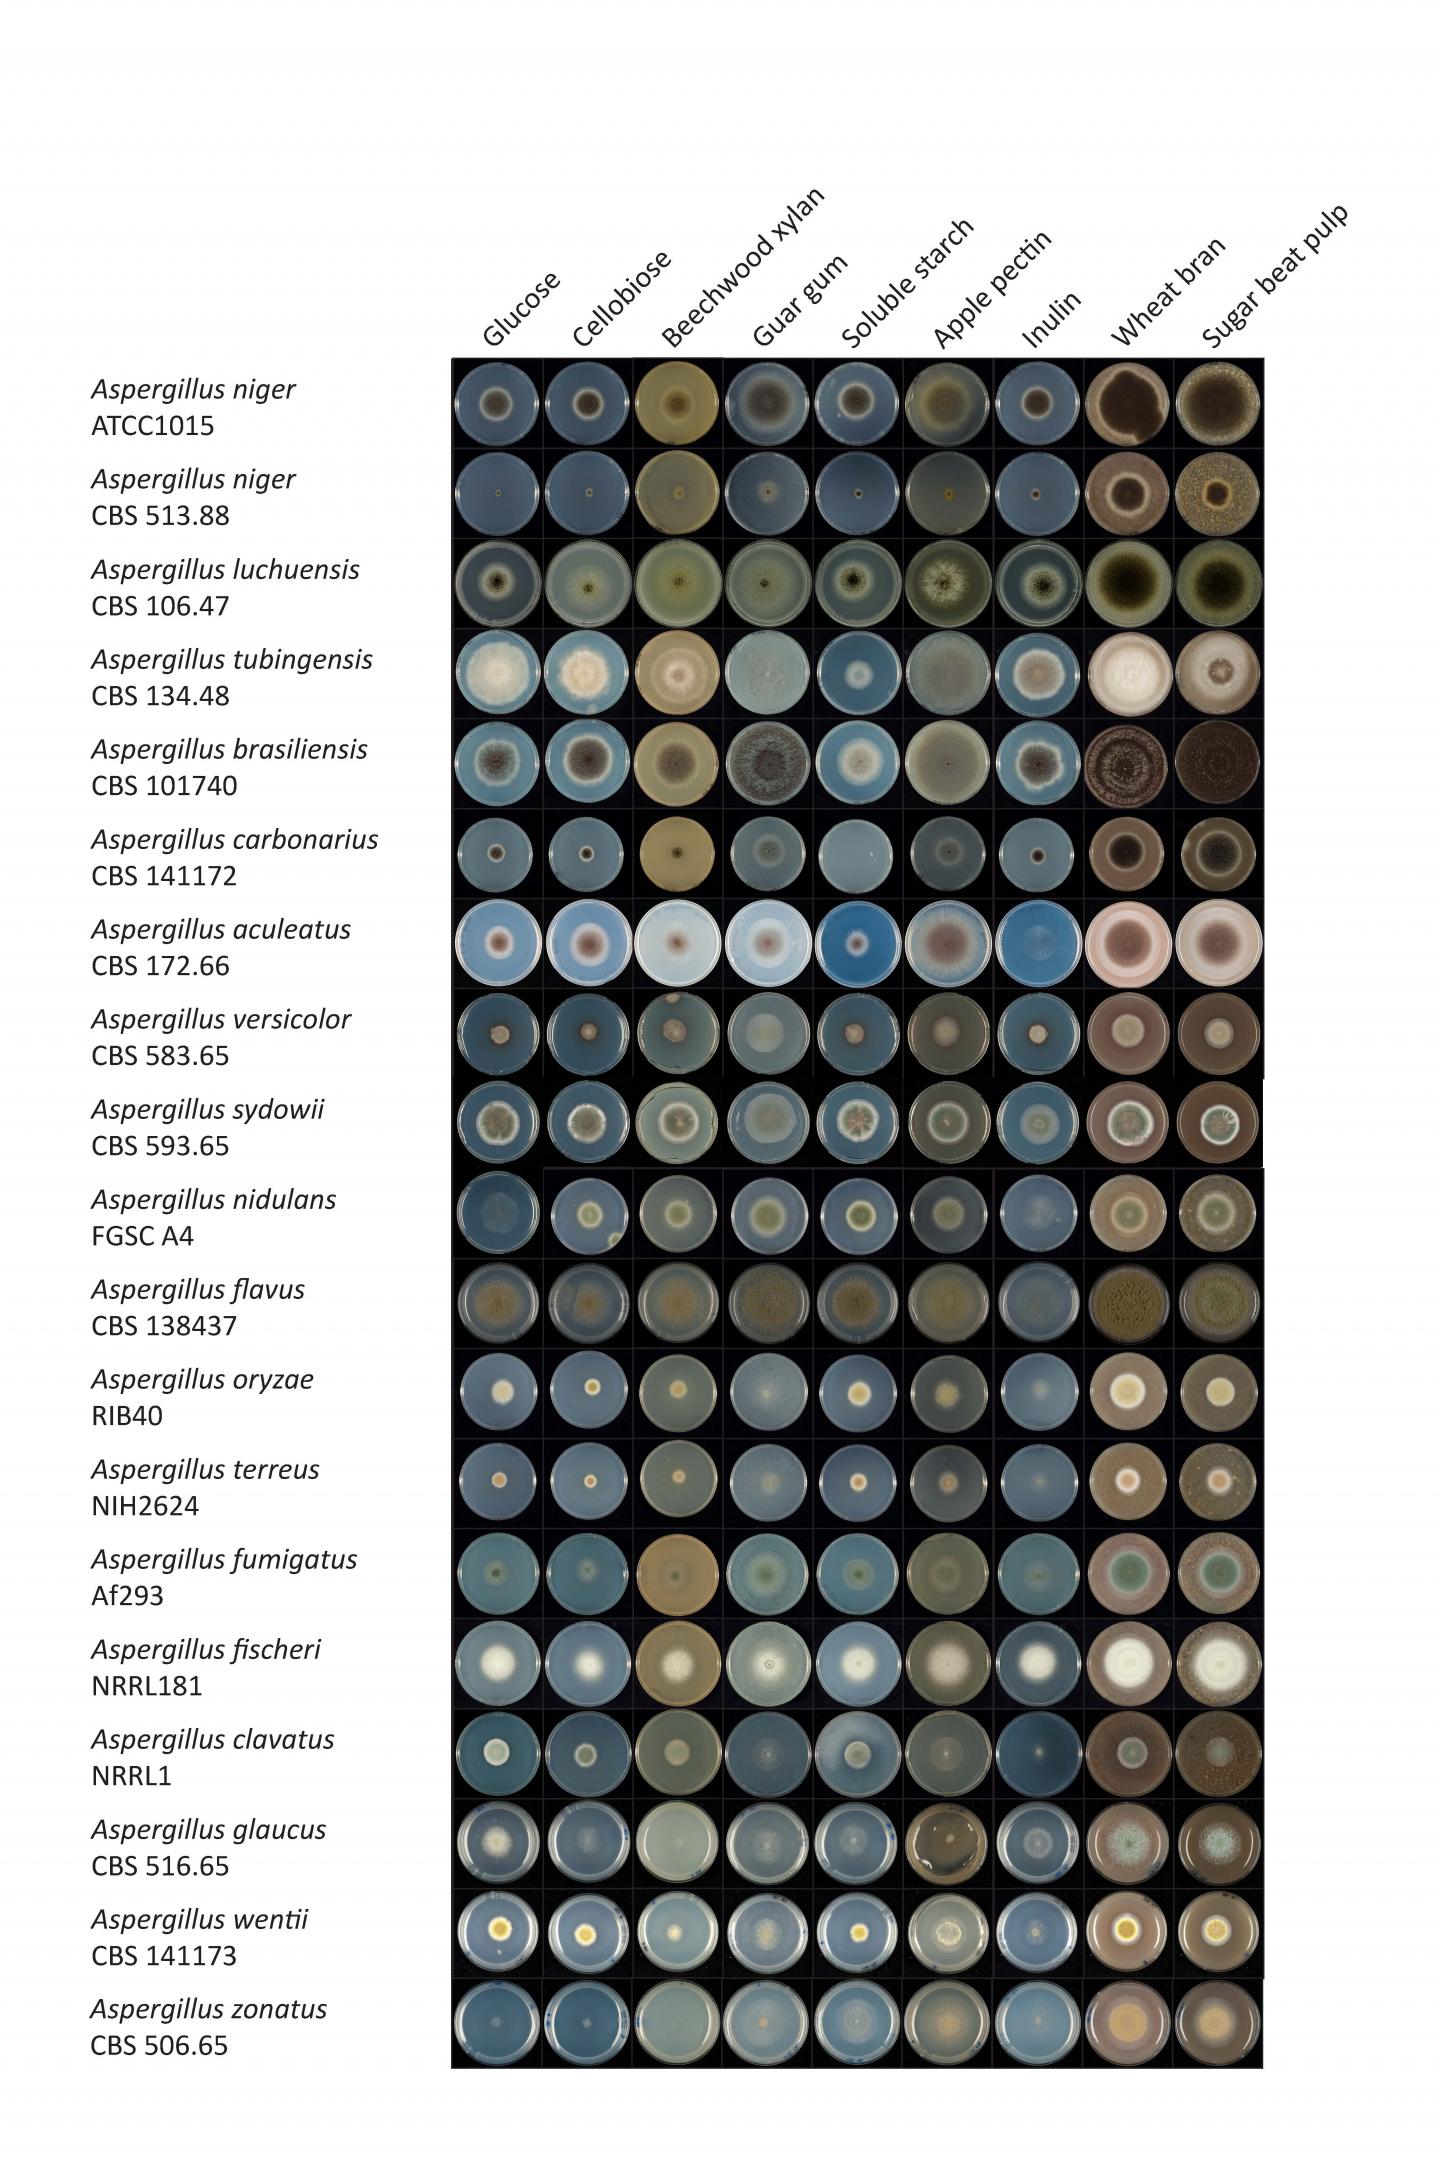 Comparative Growth of <i>Aspergillus</i> Fungi